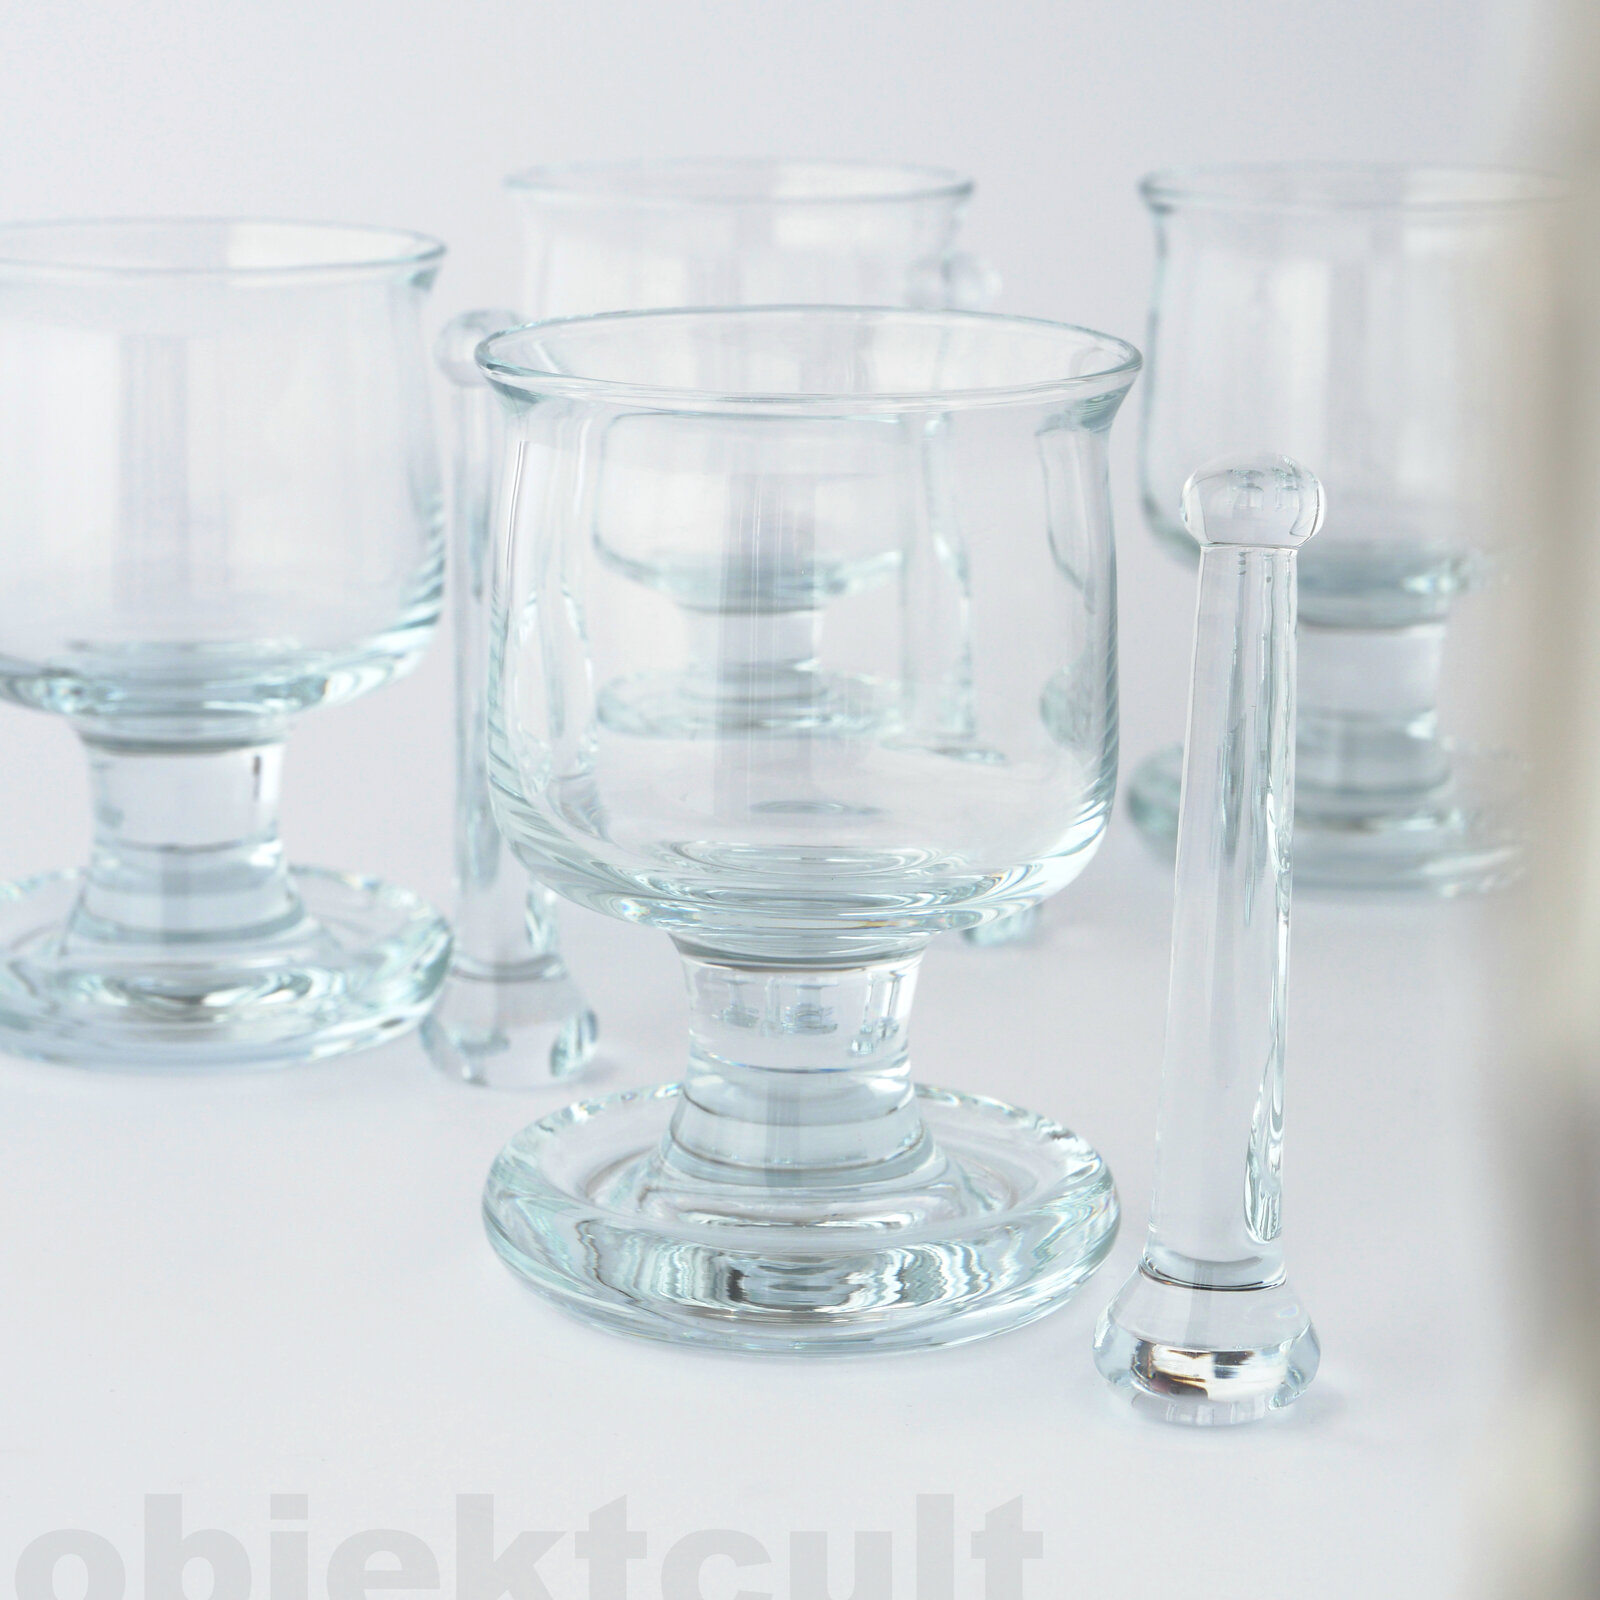 drinkingglass, Trinkglas, manufacturer: Holmegaard, design: Michael Bang, 1973